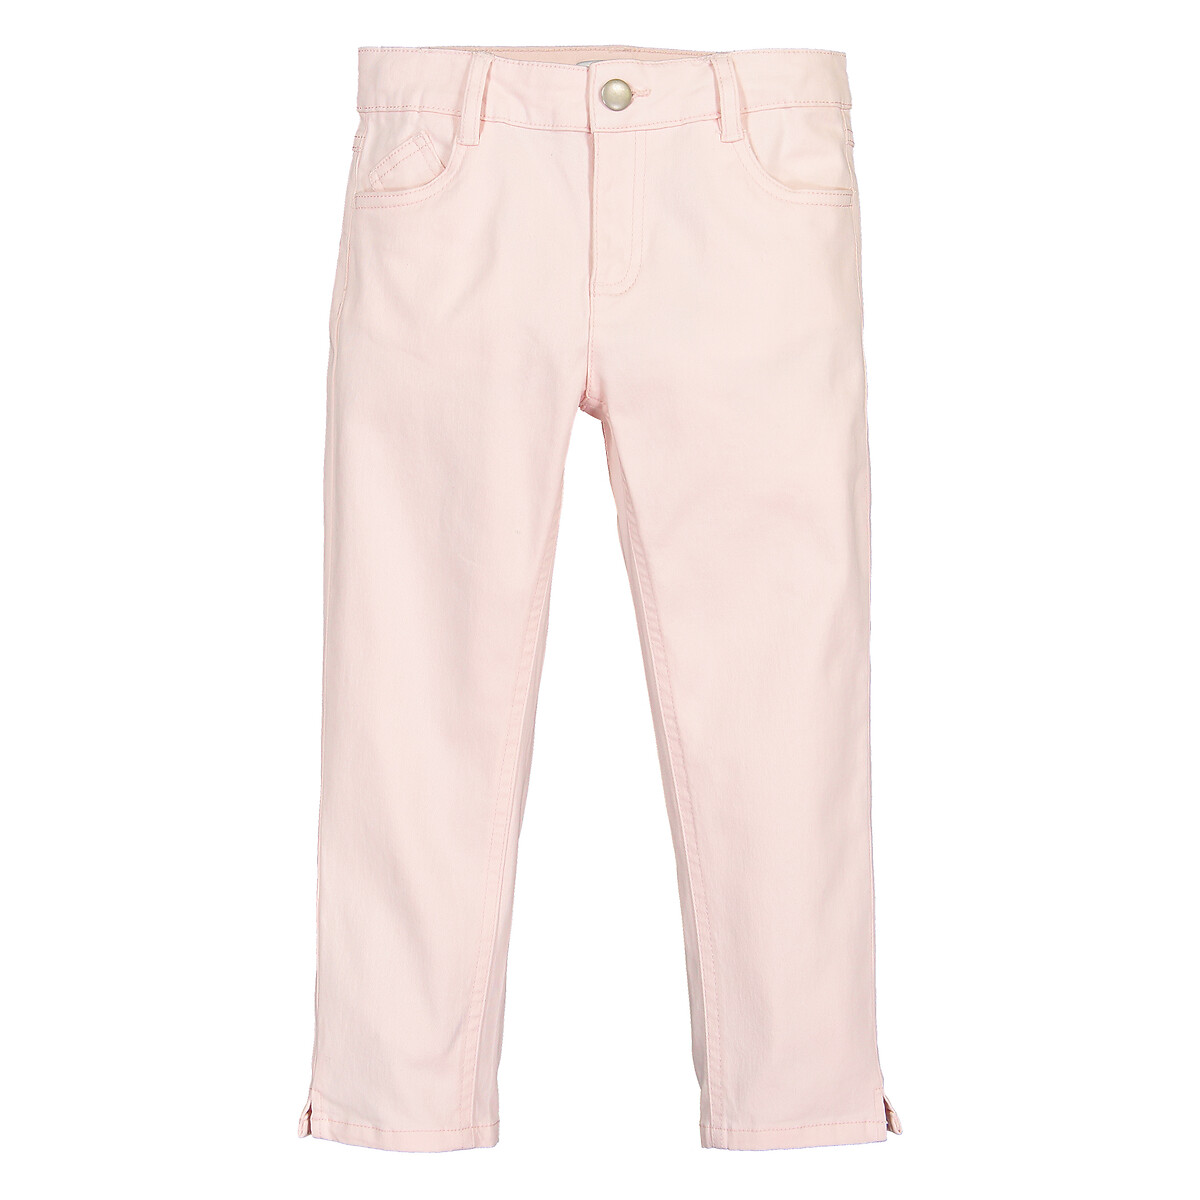 OMFG Pale pink metallic trousers by Amy Lynn  POP  NOD